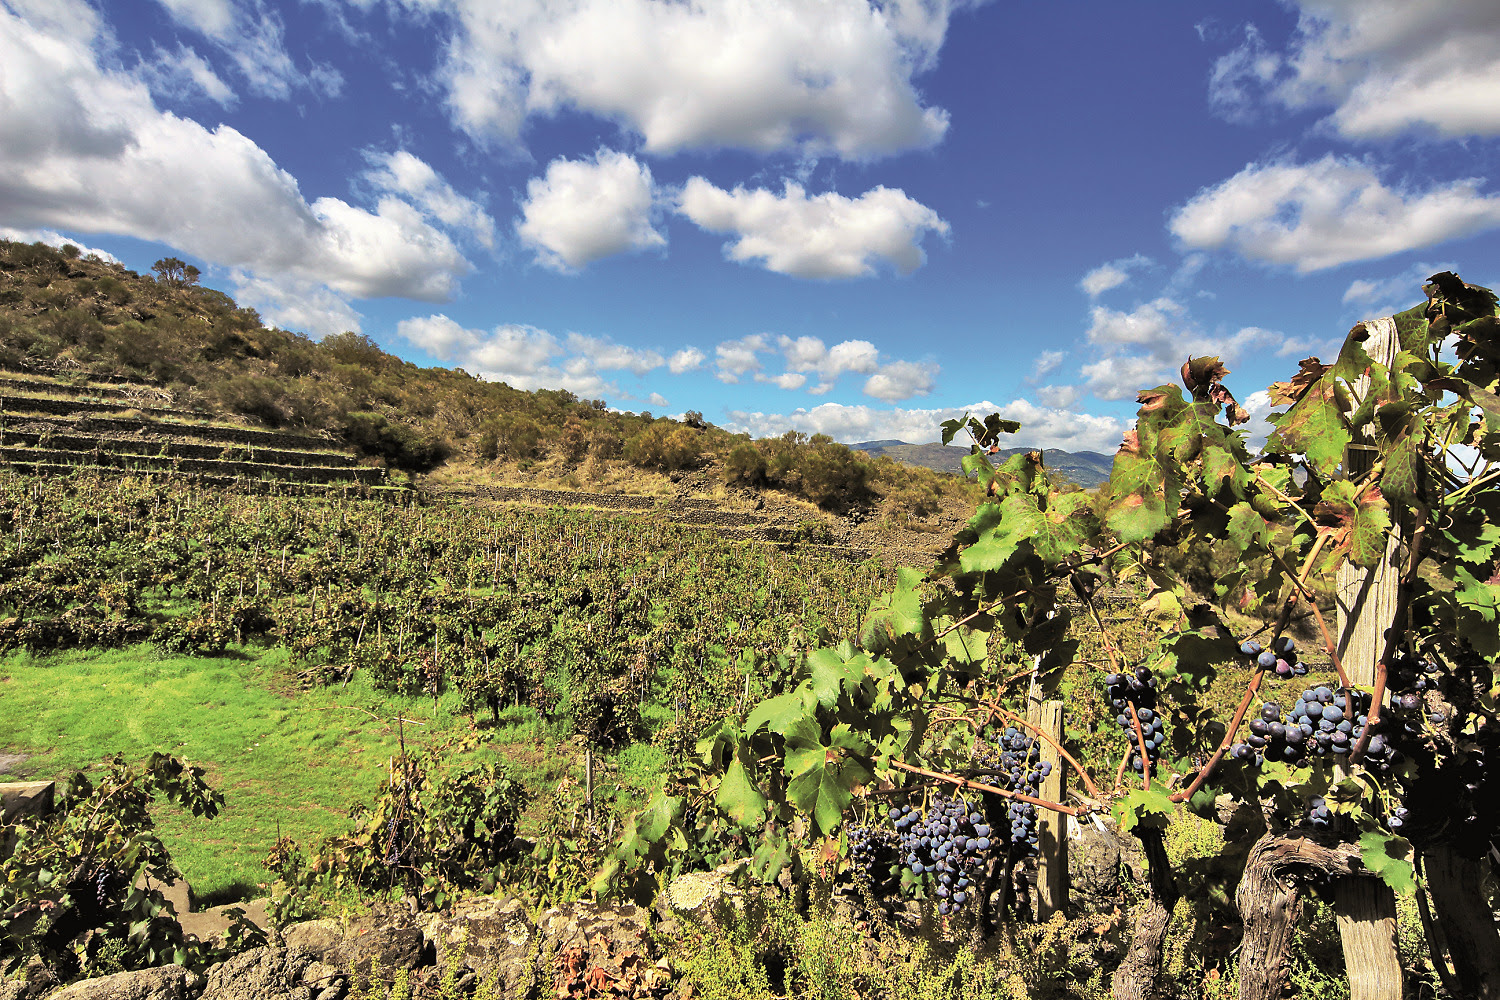 La Denominazione di Origine Controllata dei vini Etna nasce nel 1968, come la prima fondata in Sicilia e tra le prime create in Italia, foto da comunicato stampa